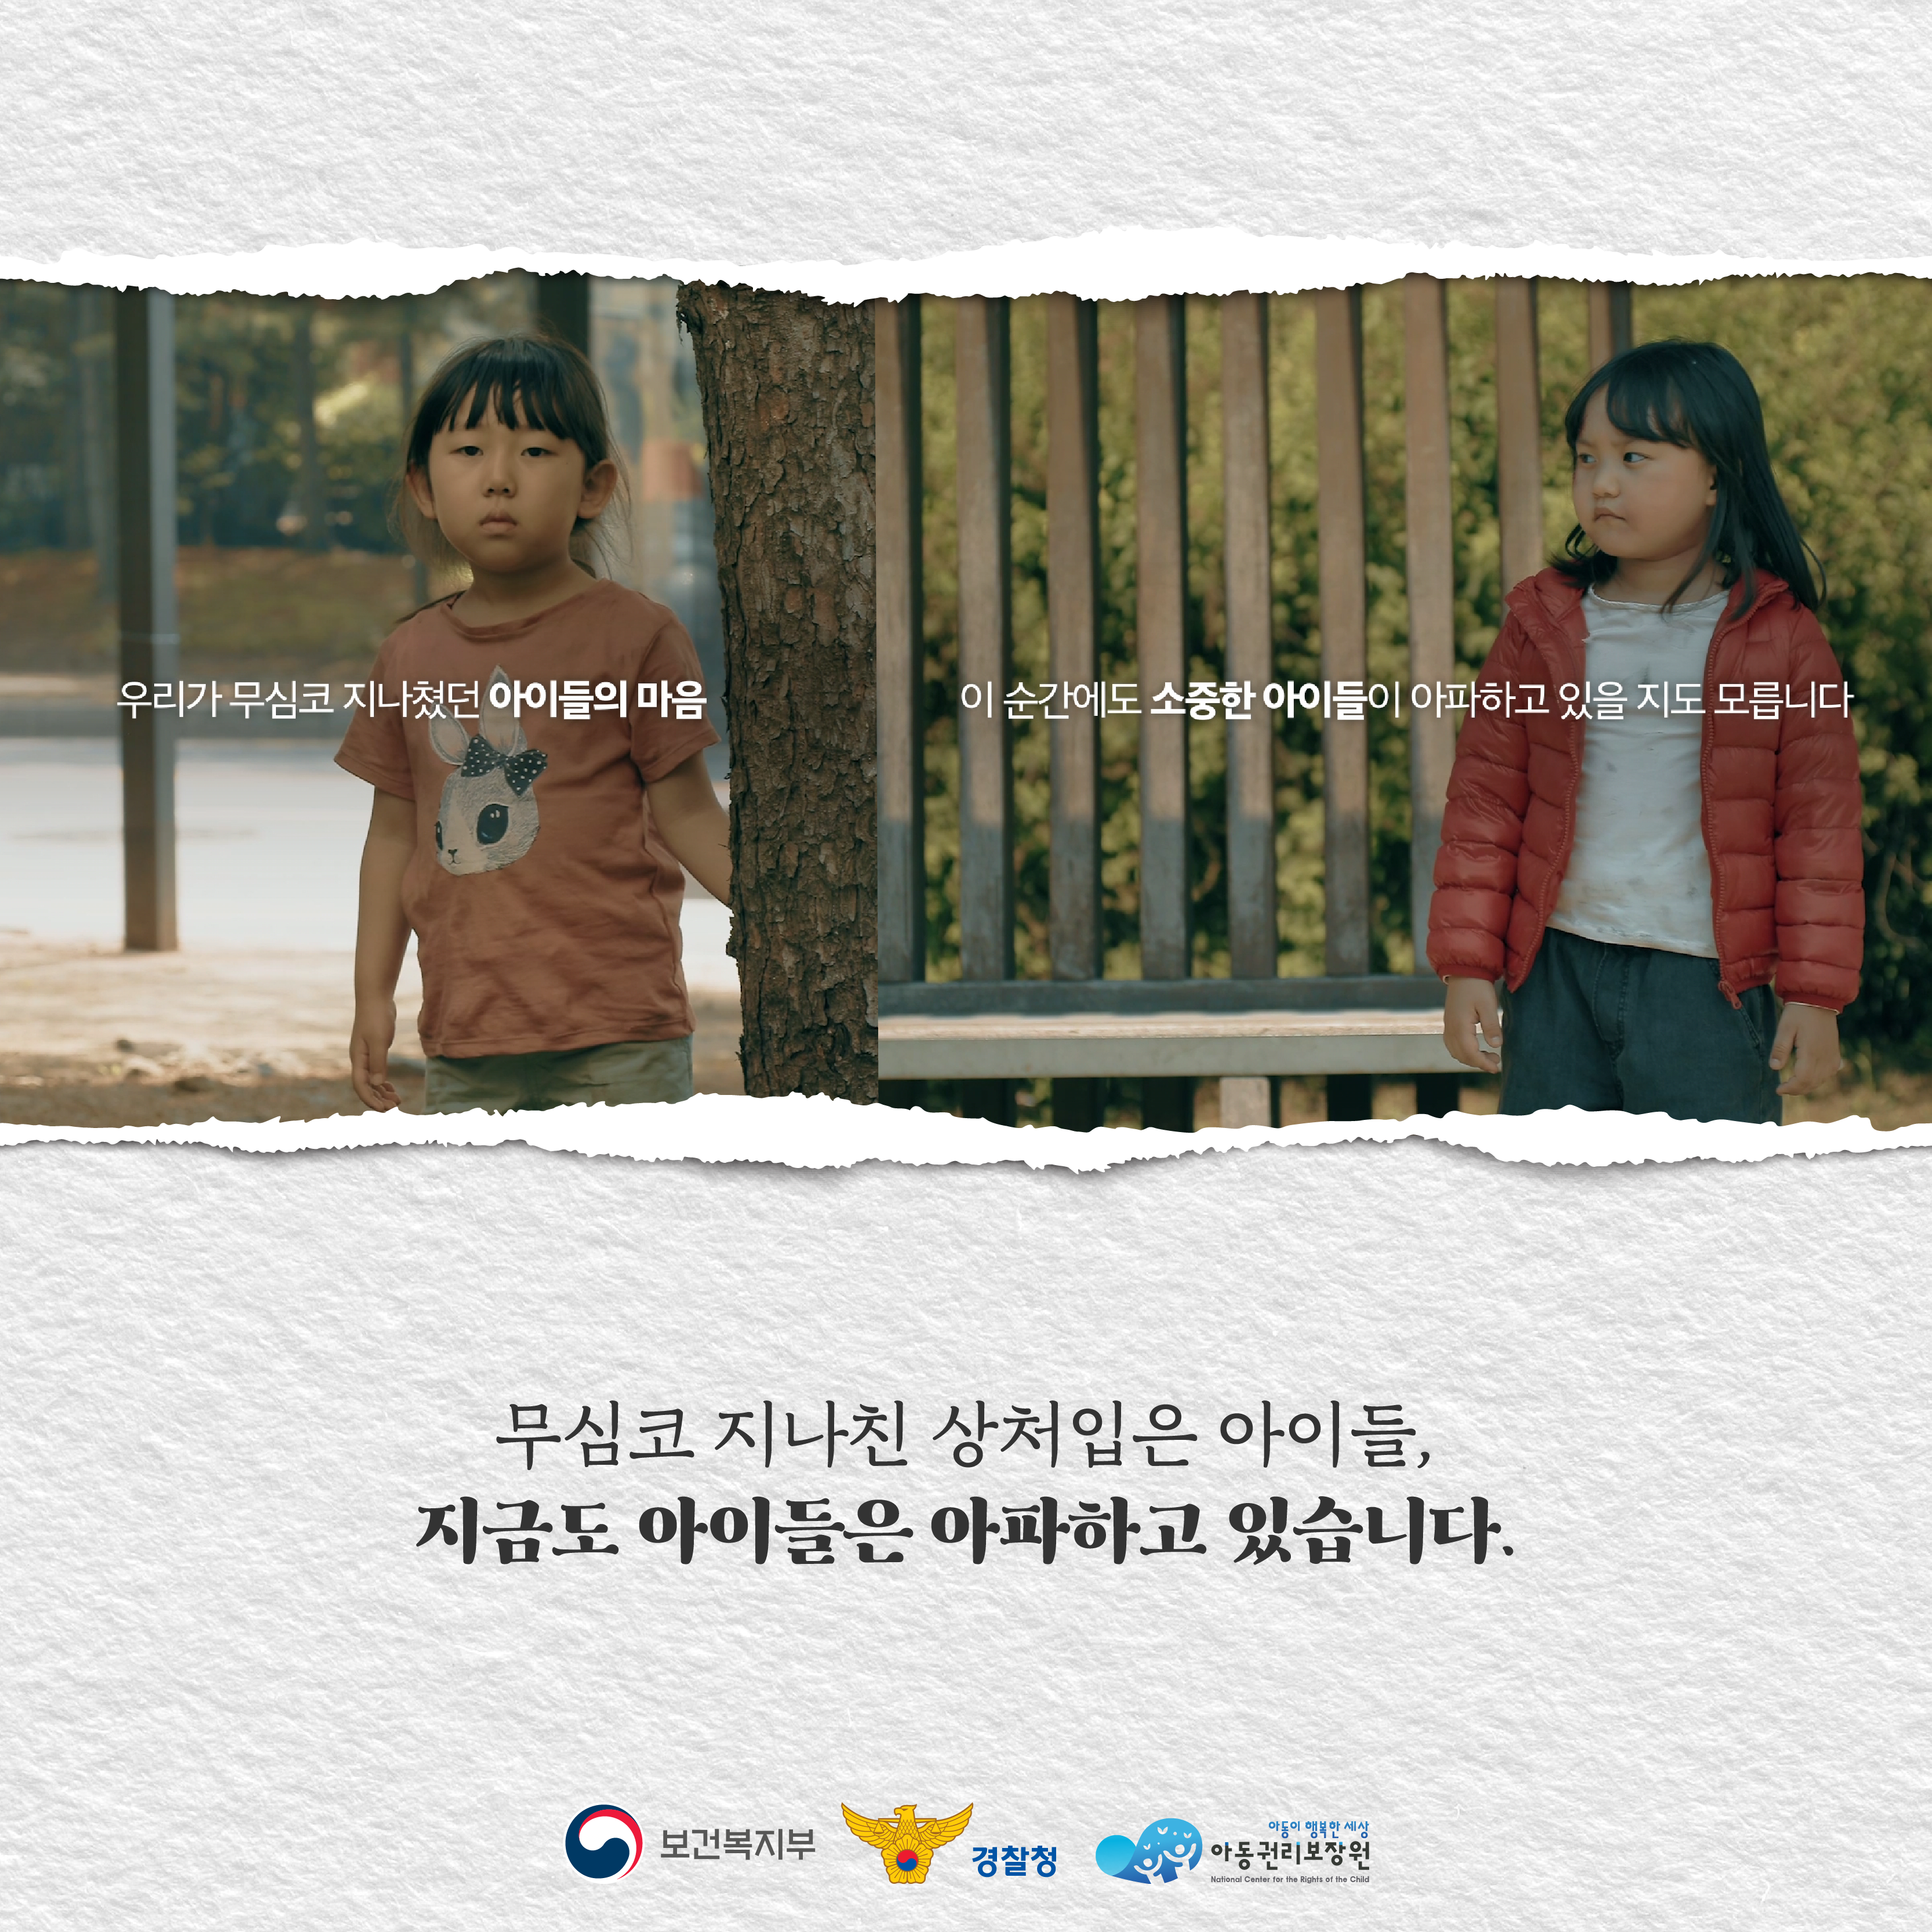 아동학대예방TVC_카드뉴스-09.png